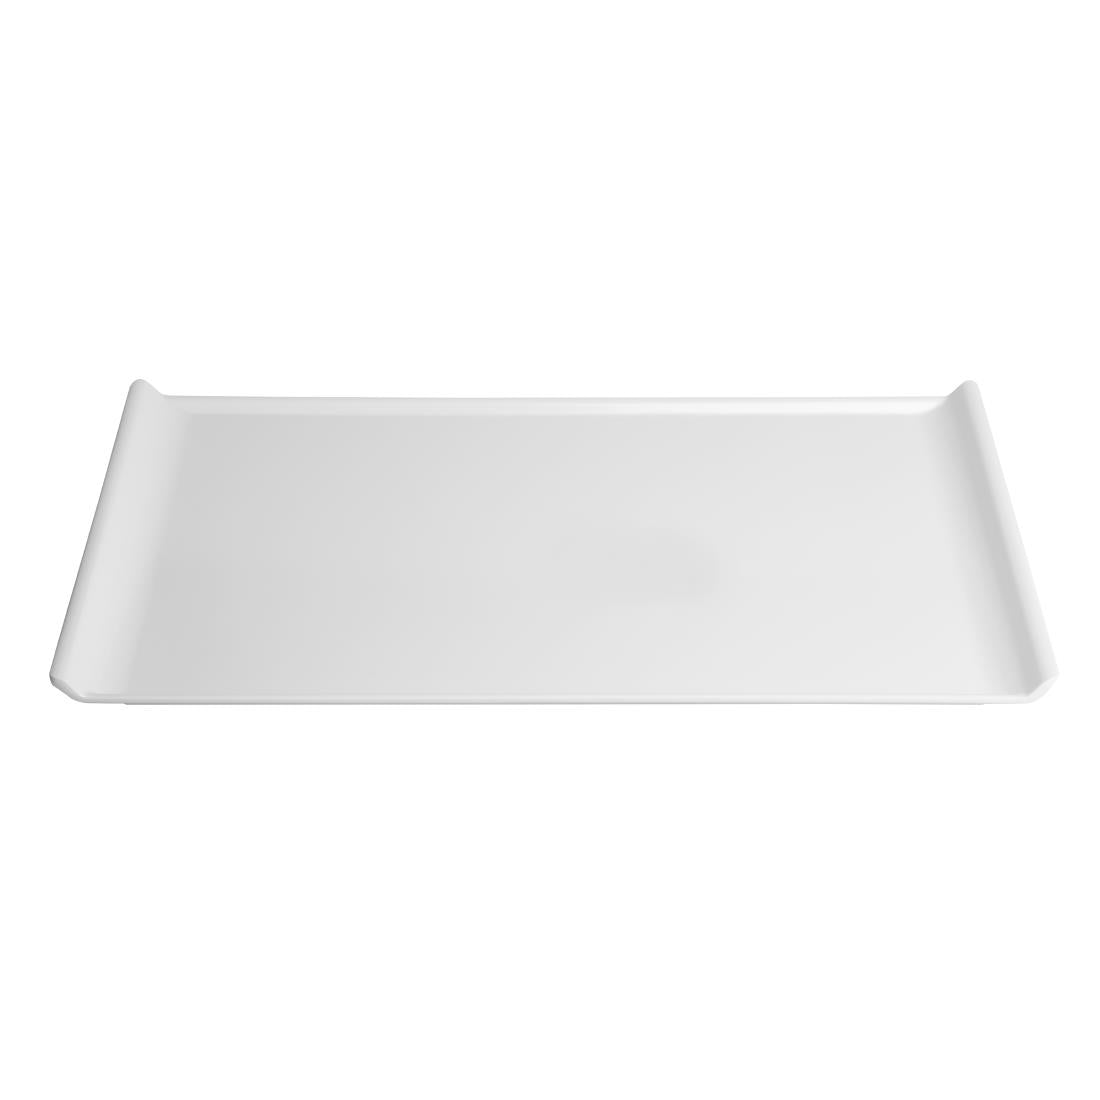 Kristallon Melamine Platter White 530 x 330mm JD Catering Equipment Solutions Ltd